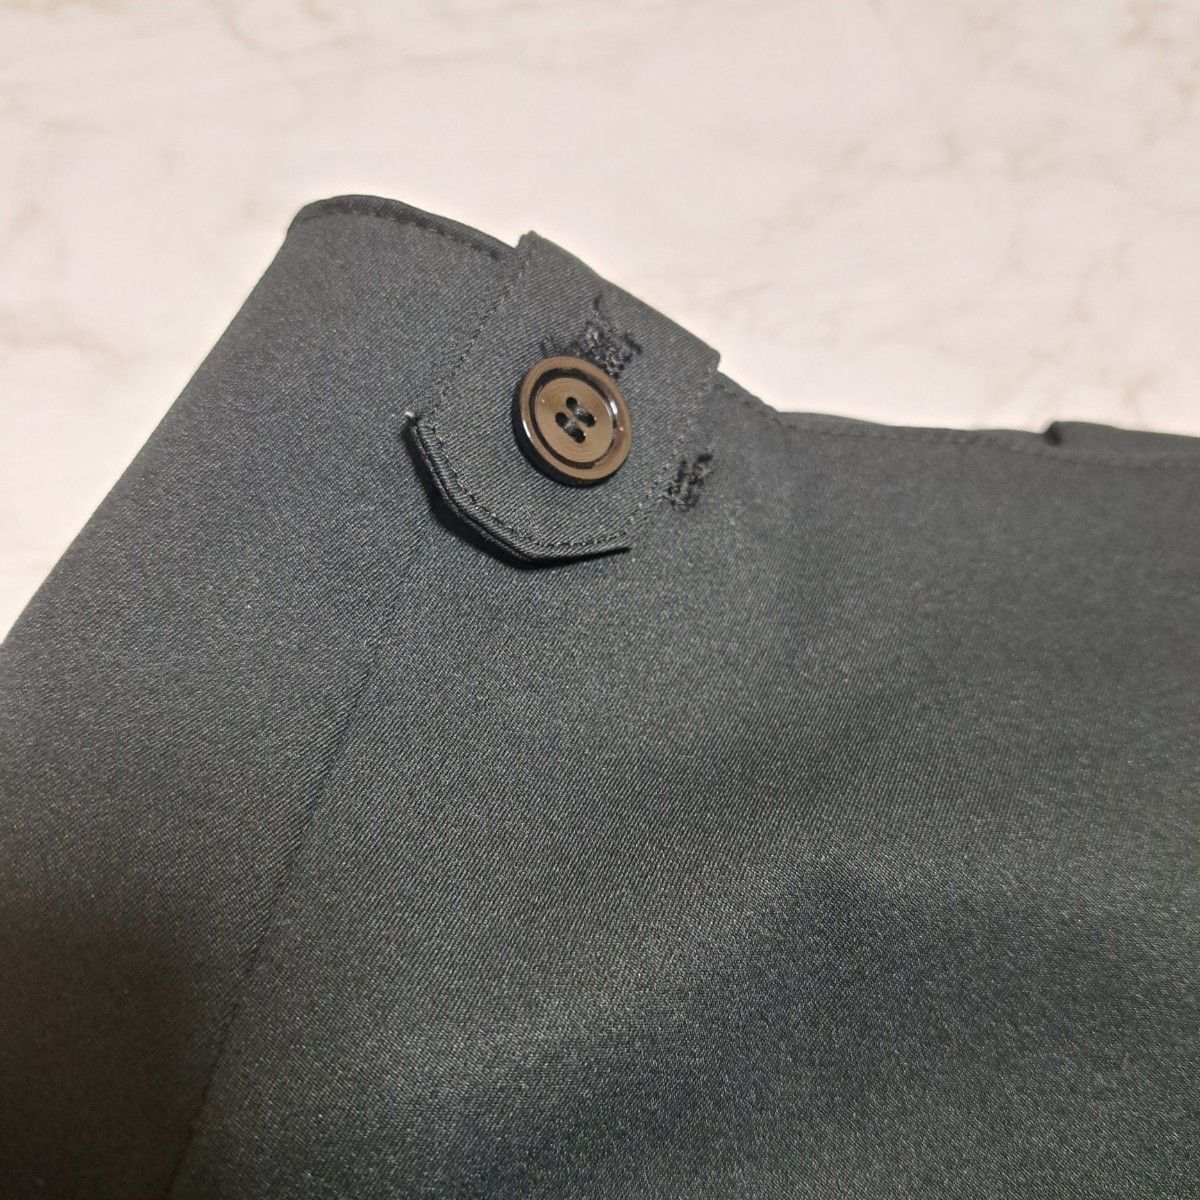 【proama】ボーリング キュロット巻きスカート Mサイズ ブラック 黒 ゴルフ キュロットパンツ